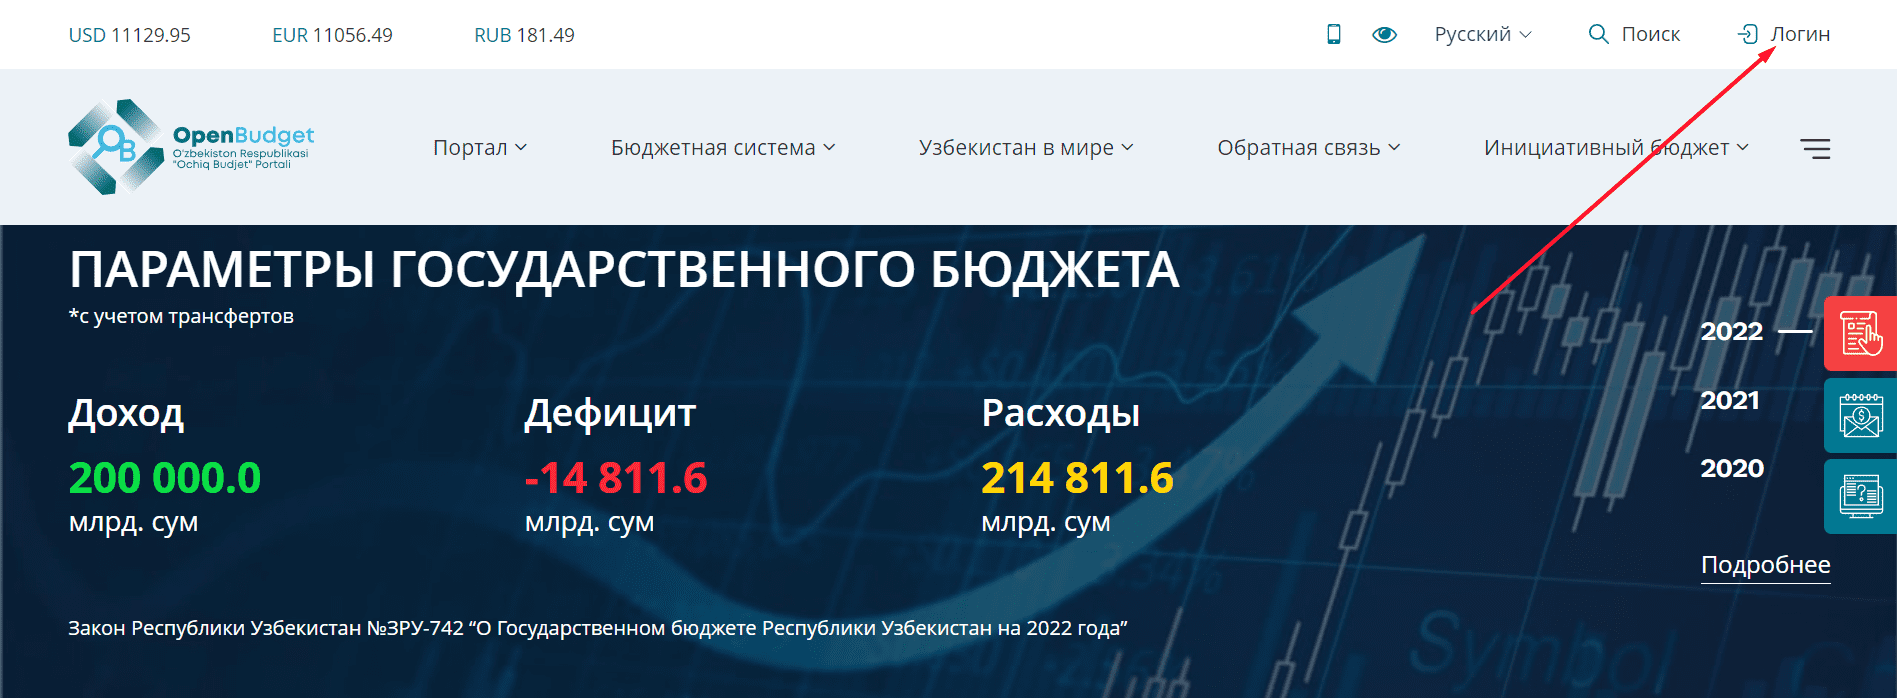 Портал “Открытый бюджет” Республики Узбекистан (openbudget.uz)